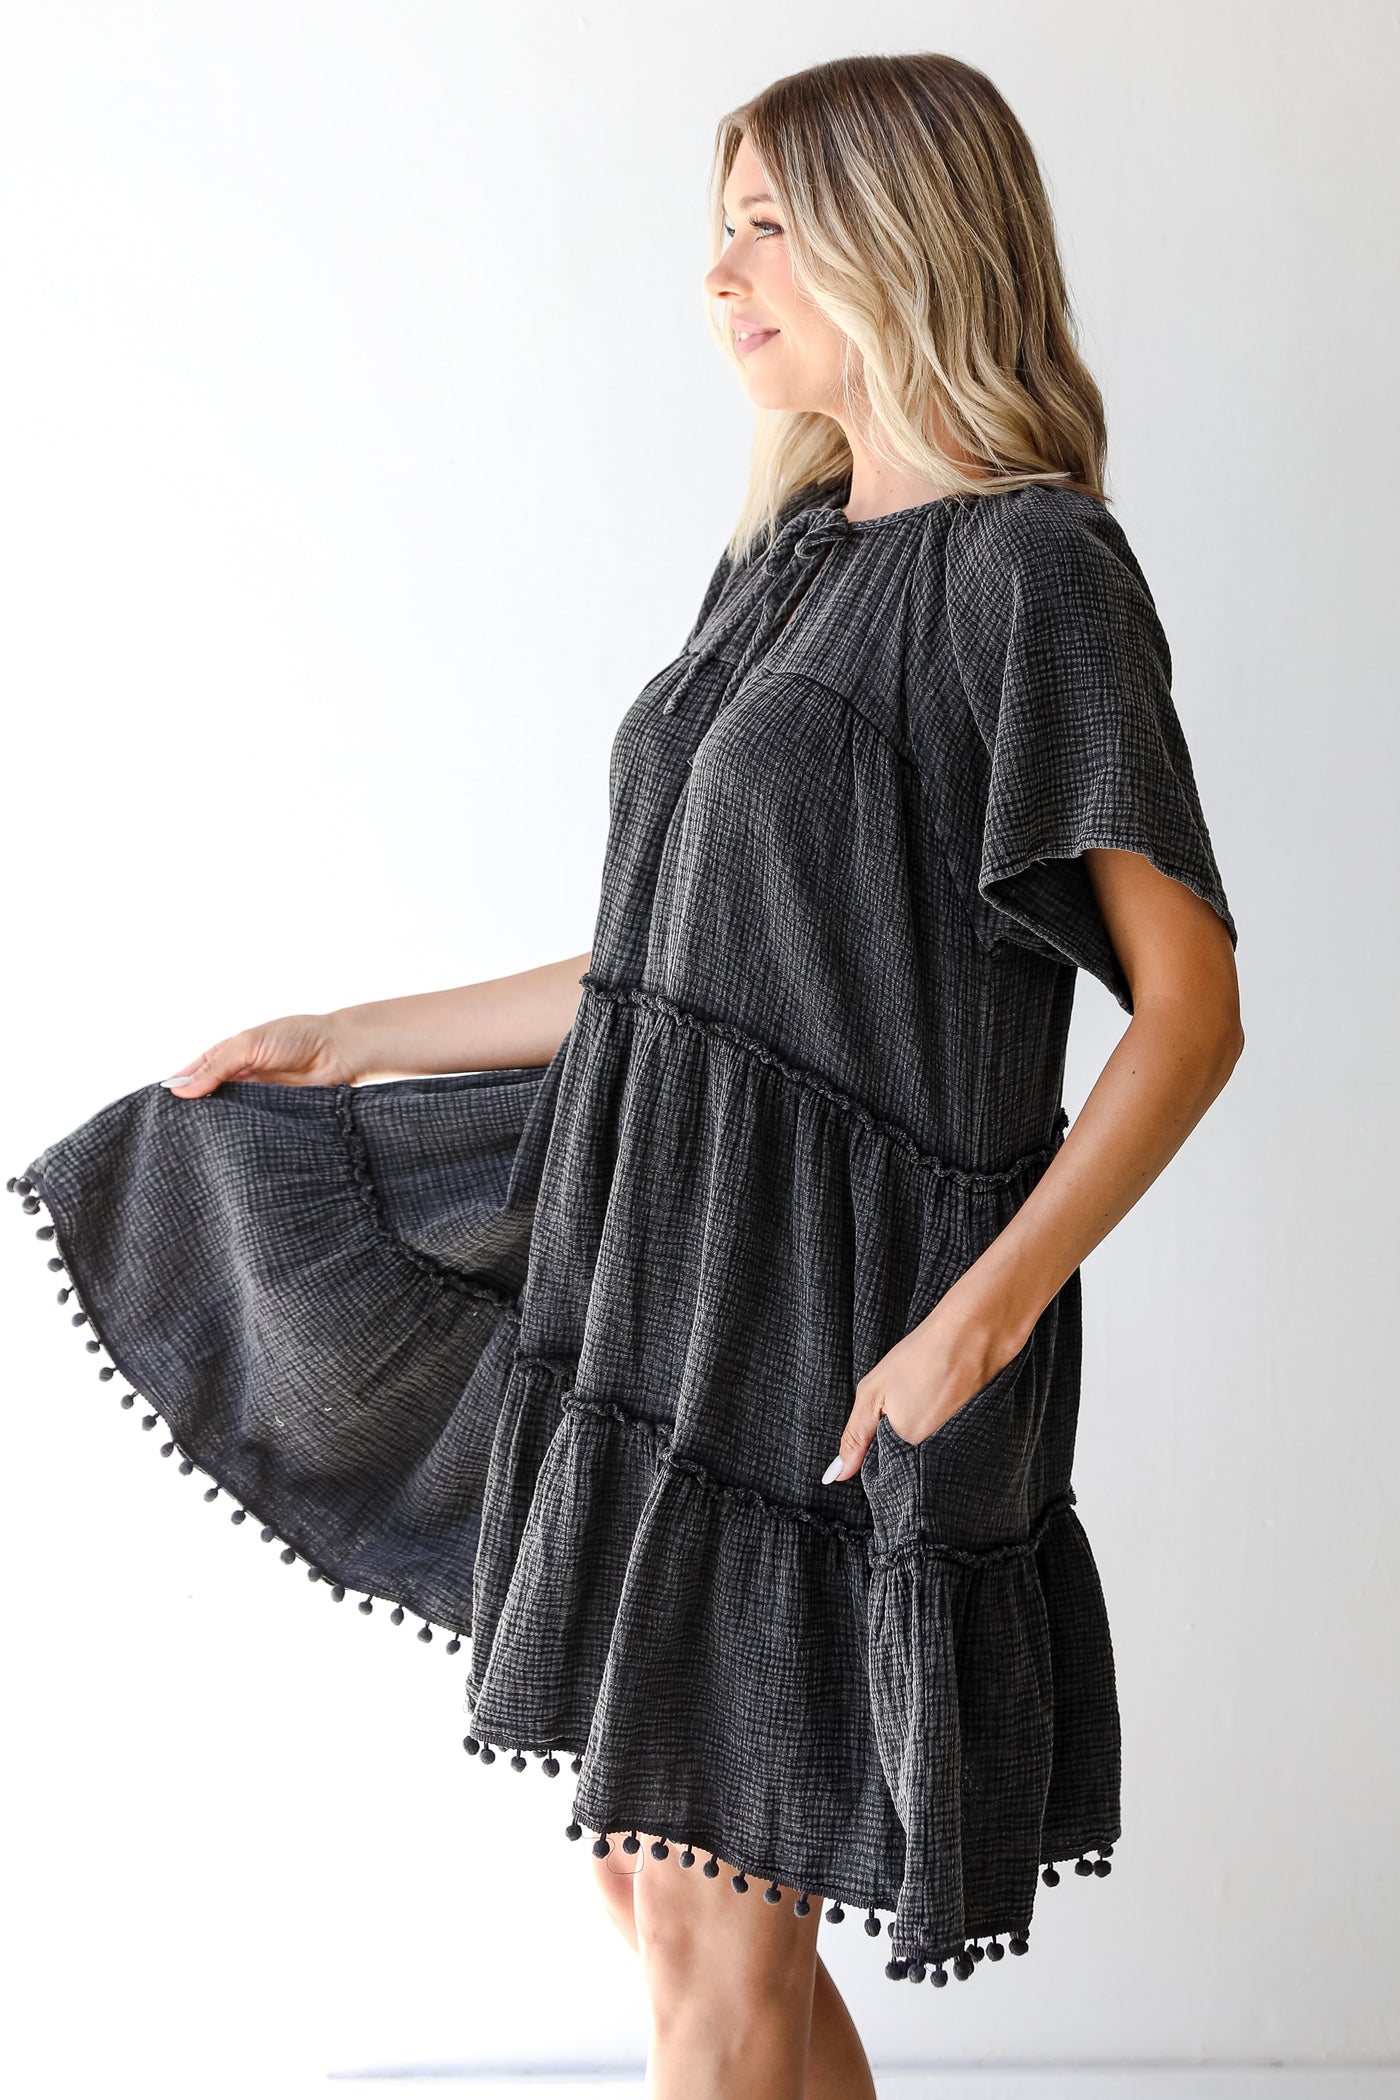 Linen Mini Dress in black side view